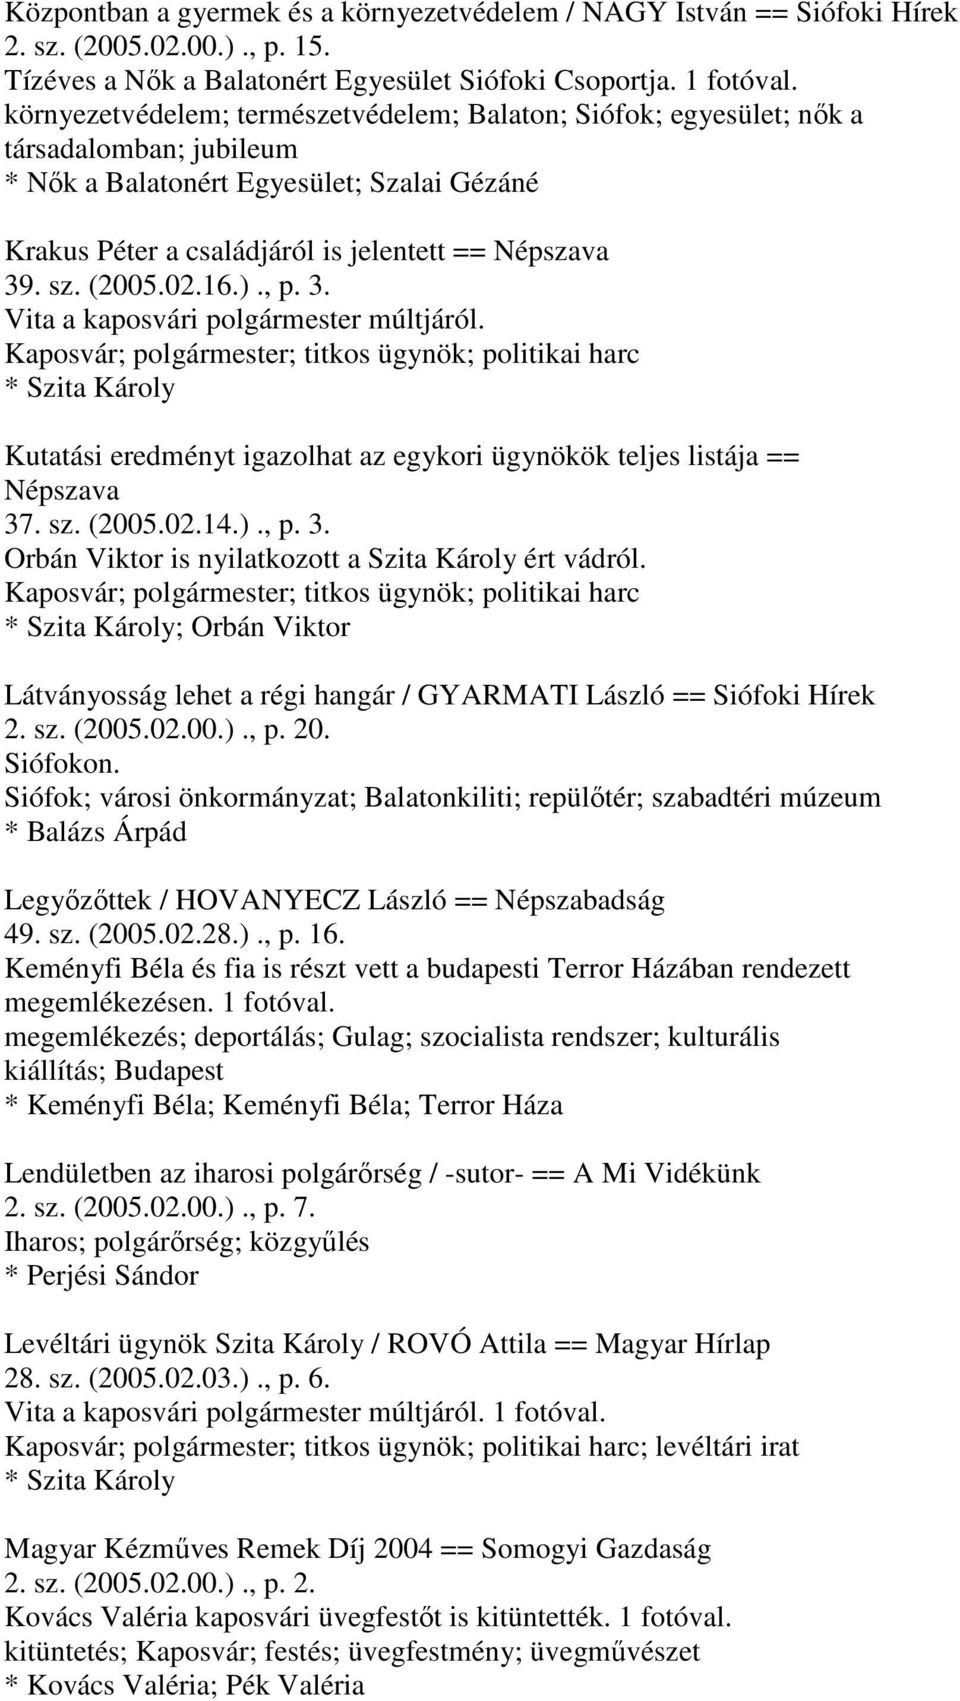 (2005.02.16.)., p. 3. Vita a kaposvári polgármester múltjáról. Kaposvár; polgármester; titkos ügynök; politikai harc Kutatási eredményt igazolhat az egykori ügynökök teljes listája == Népszava 37. sz.